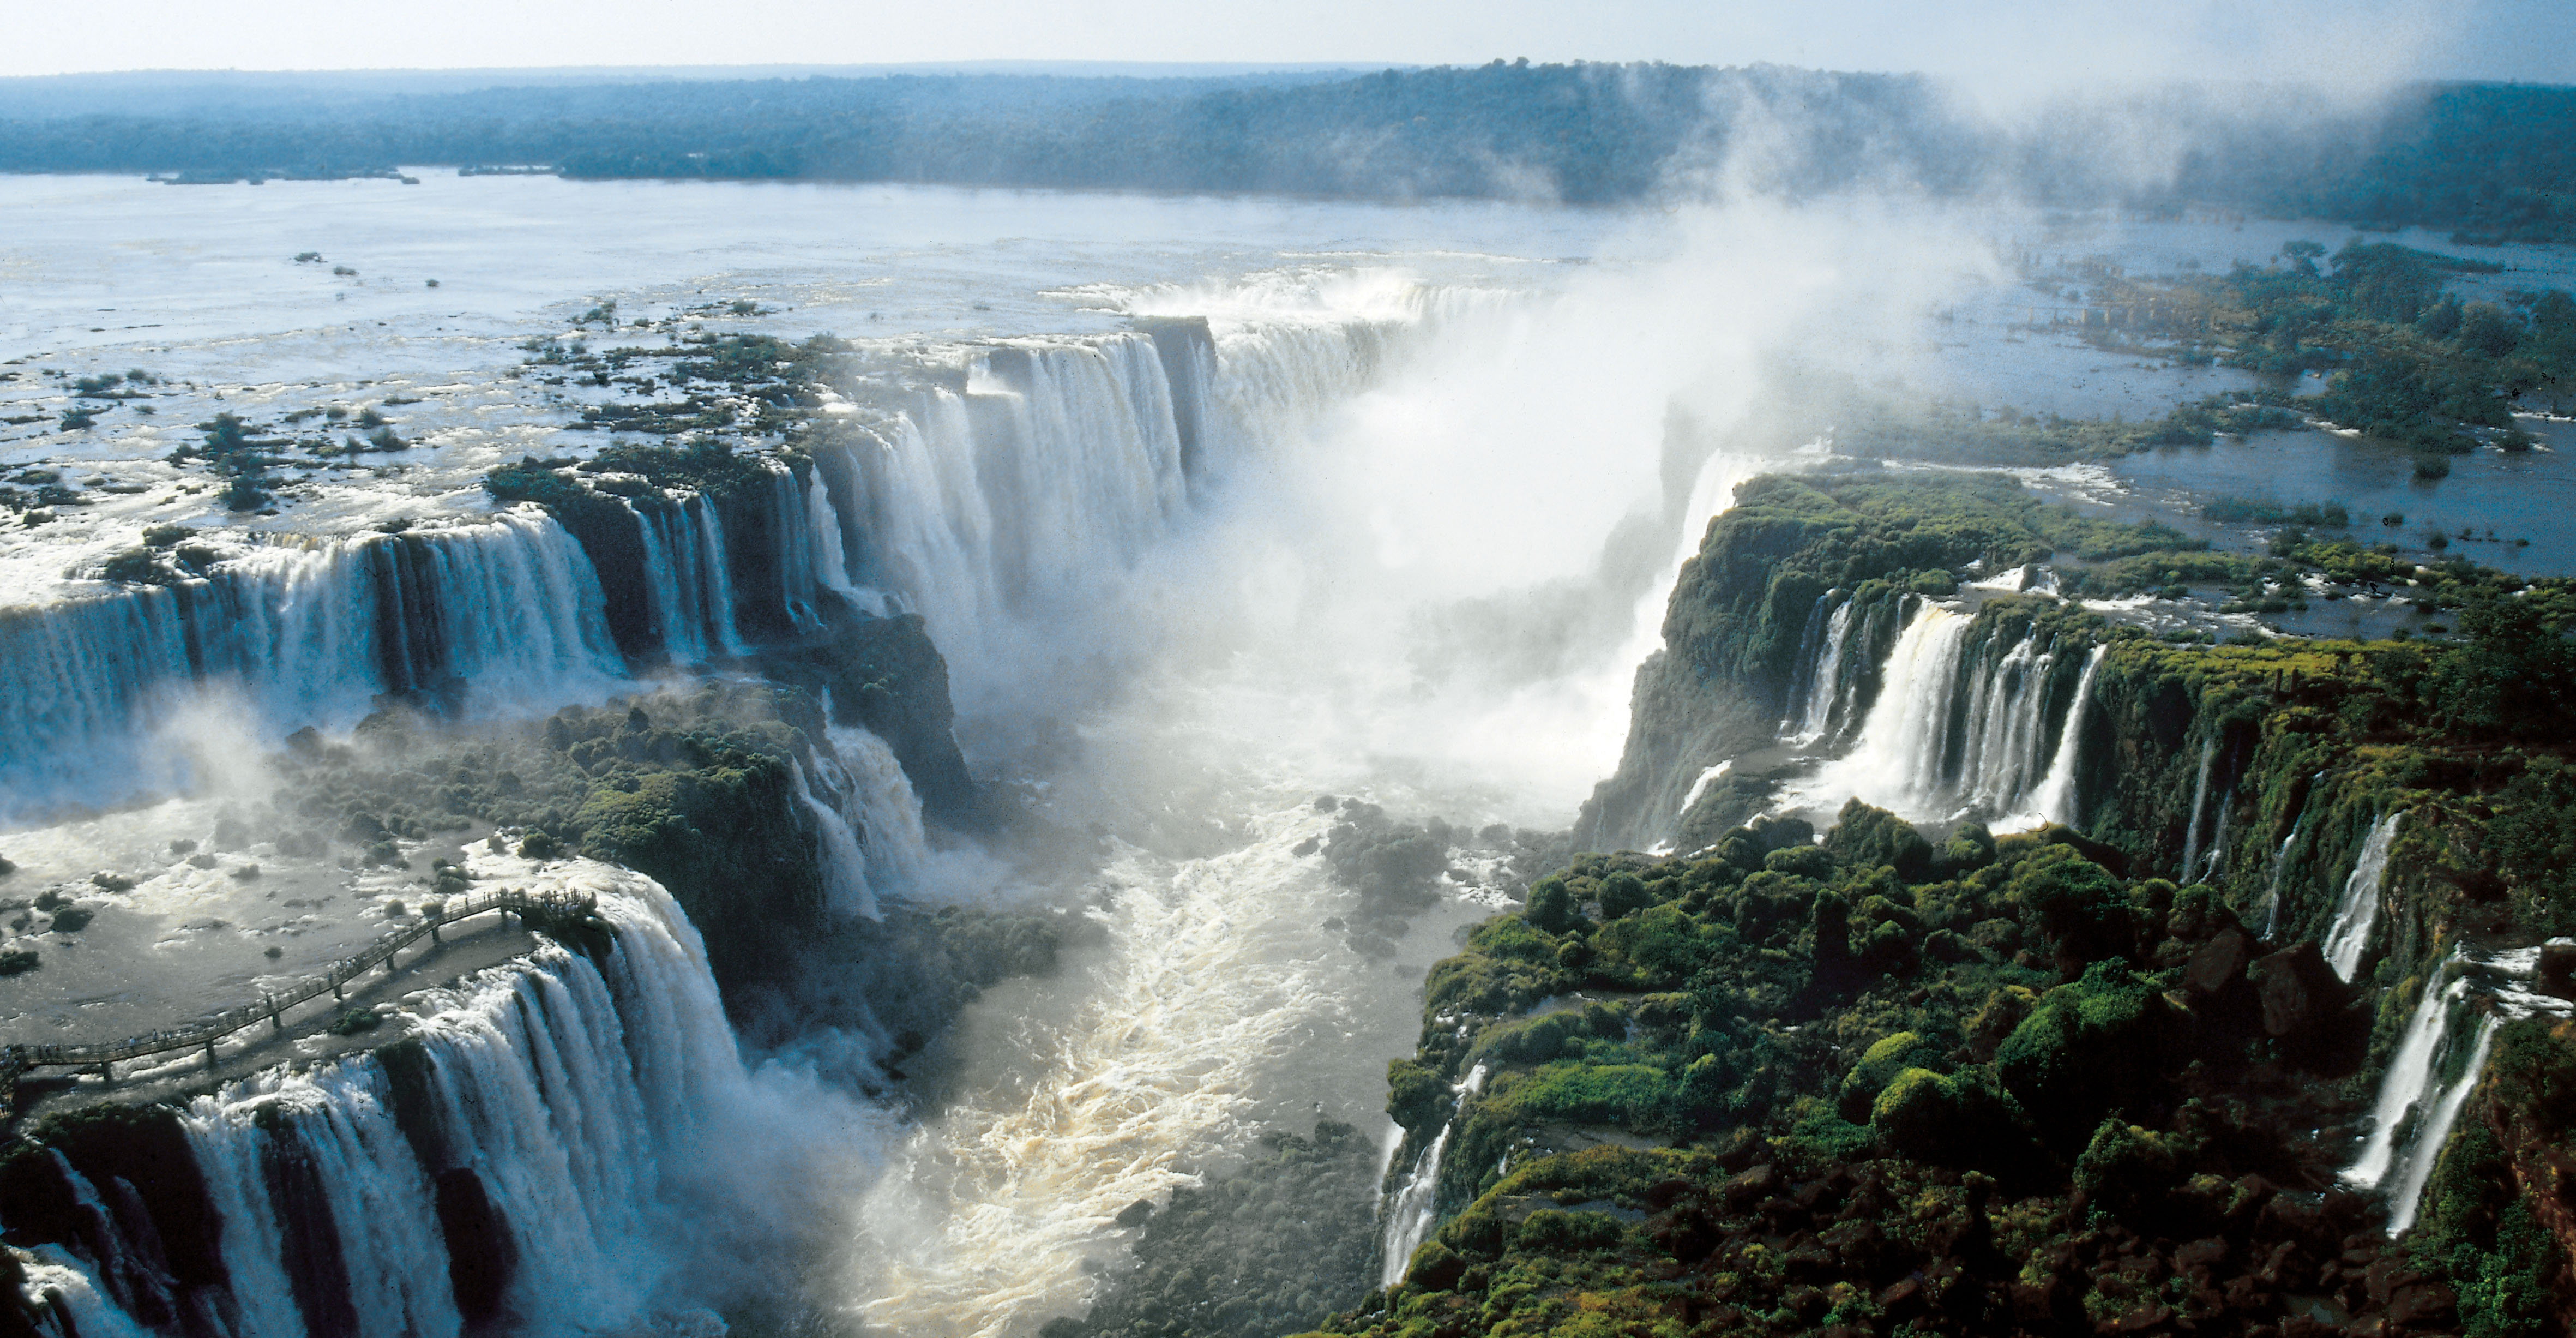 Iguazu Falls Trails & The Devil's Throat